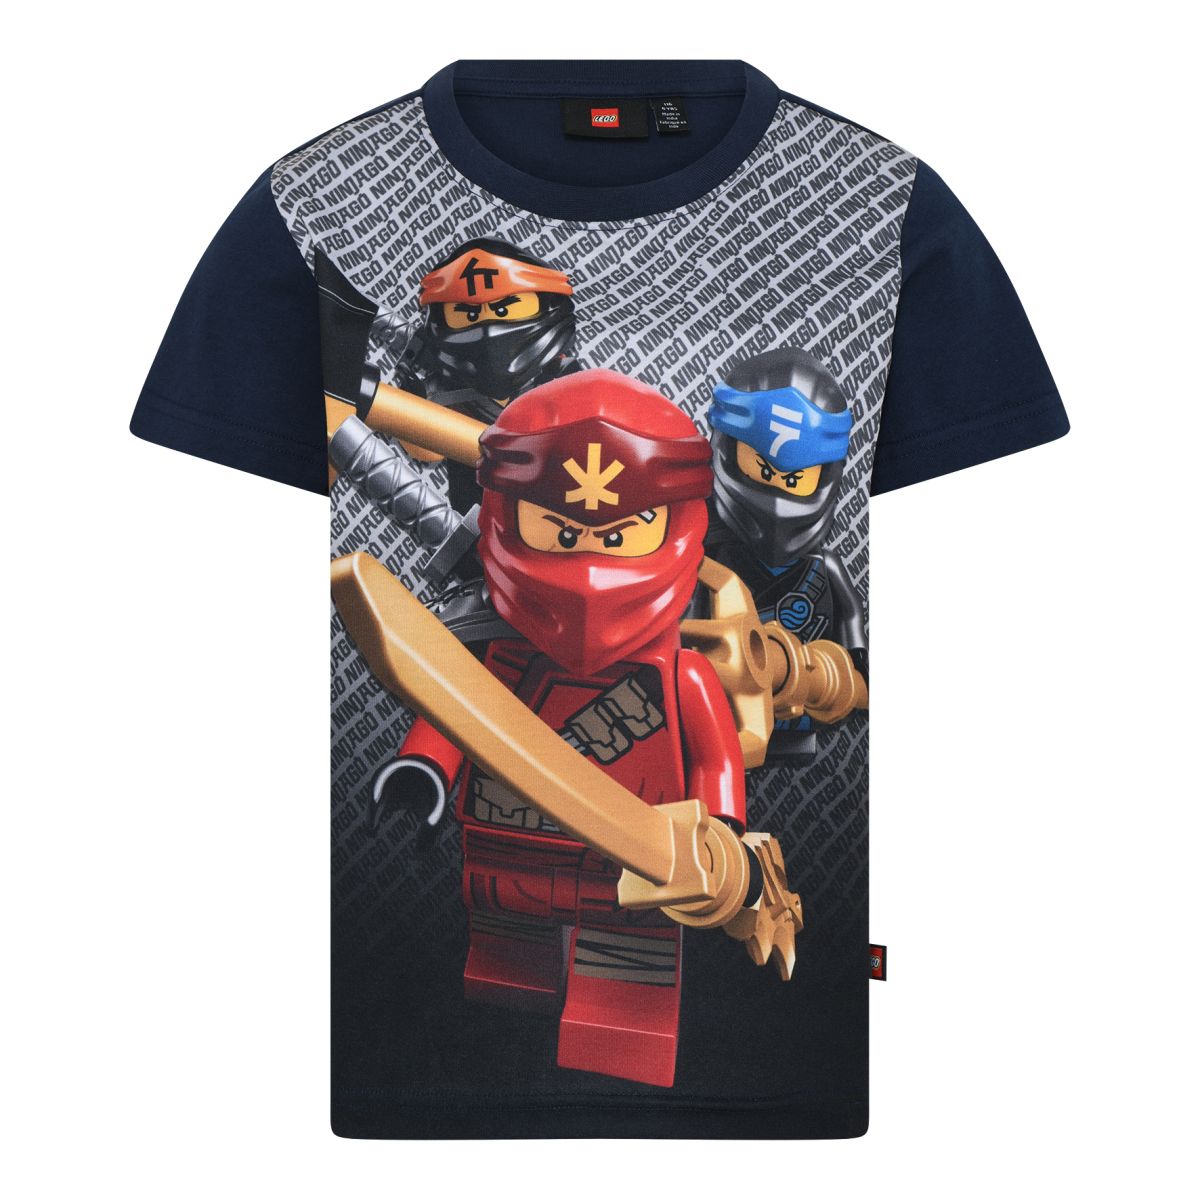 Lego Wear - Ninjago T-Shirt, dark navy - Mærker - IsaDisaKids